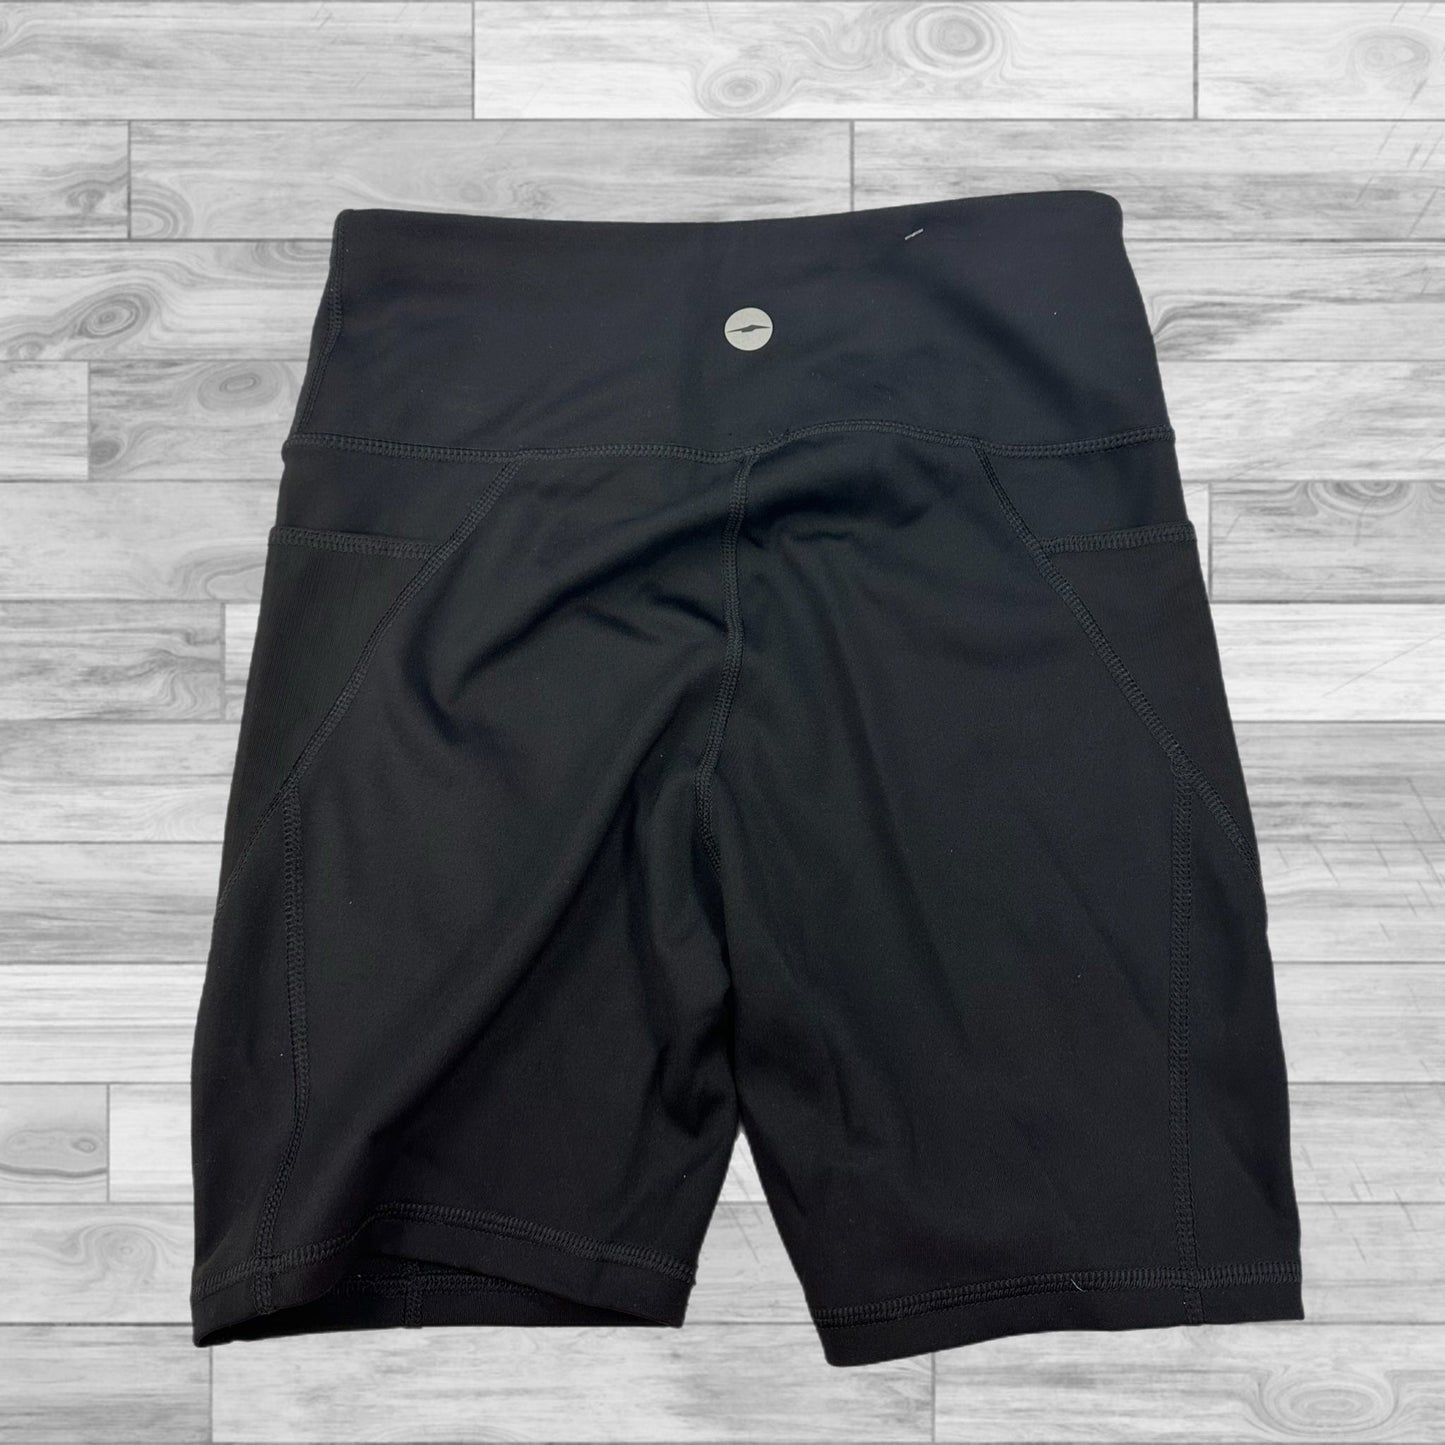 Black Athletic Shorts Avia, Size S